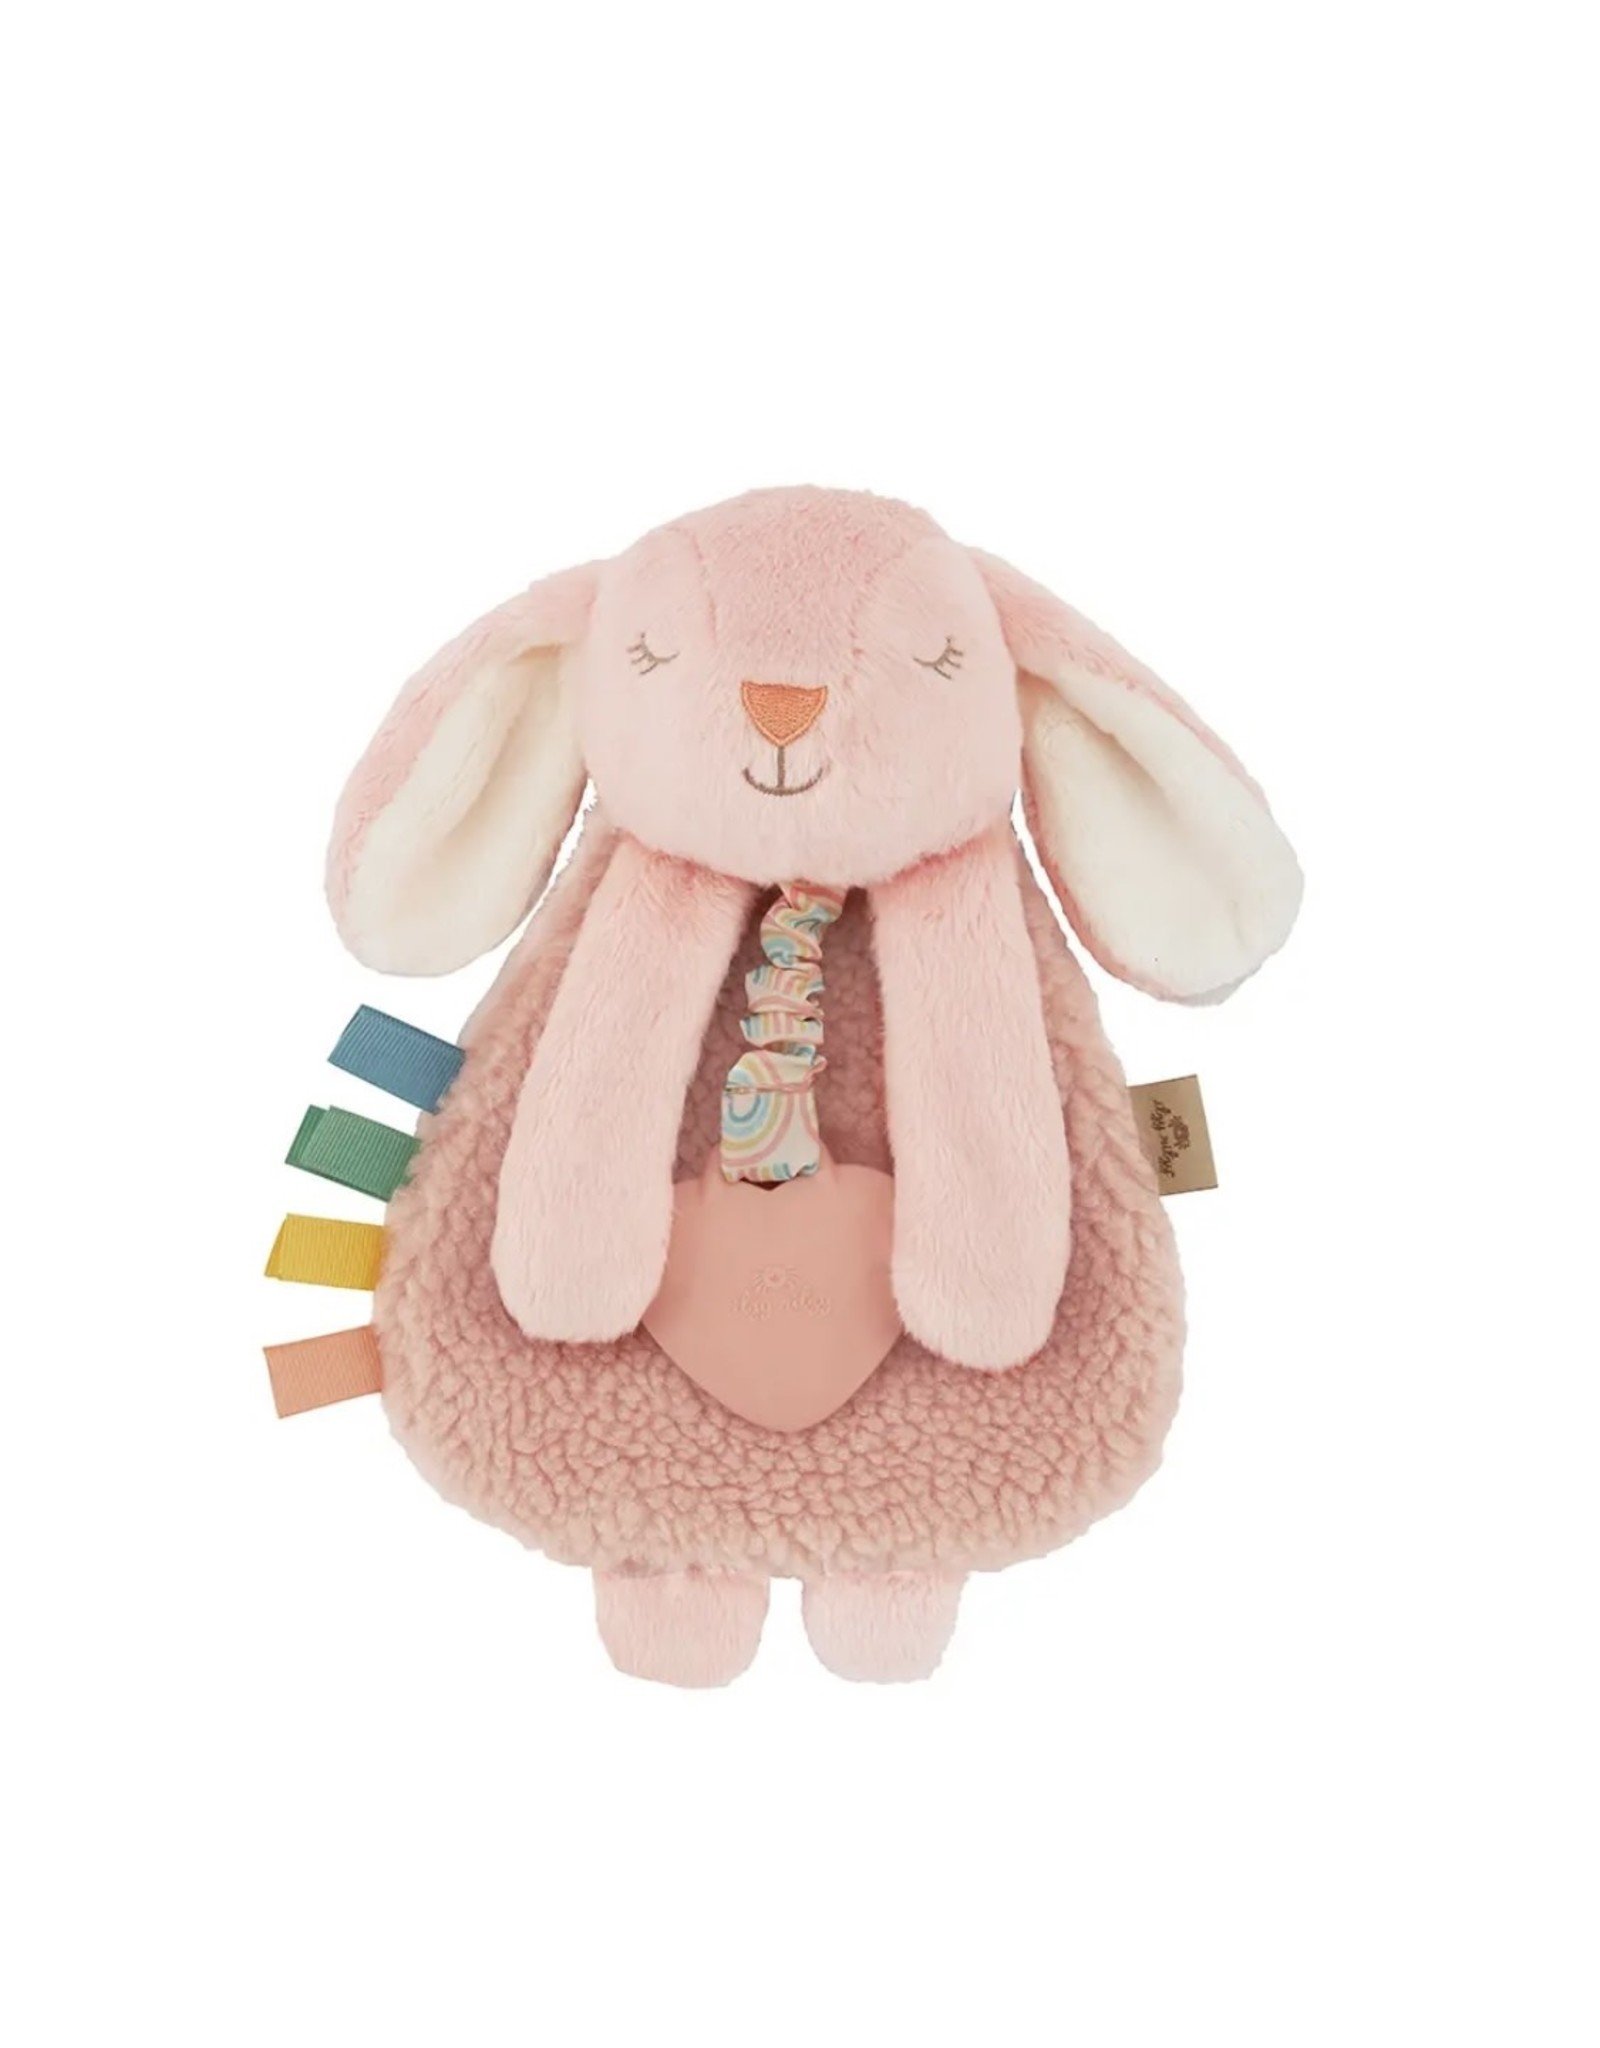 Itzy Ritzy Itzy Ritzy- Plush Lovey w/Silicone Toy: Bunny